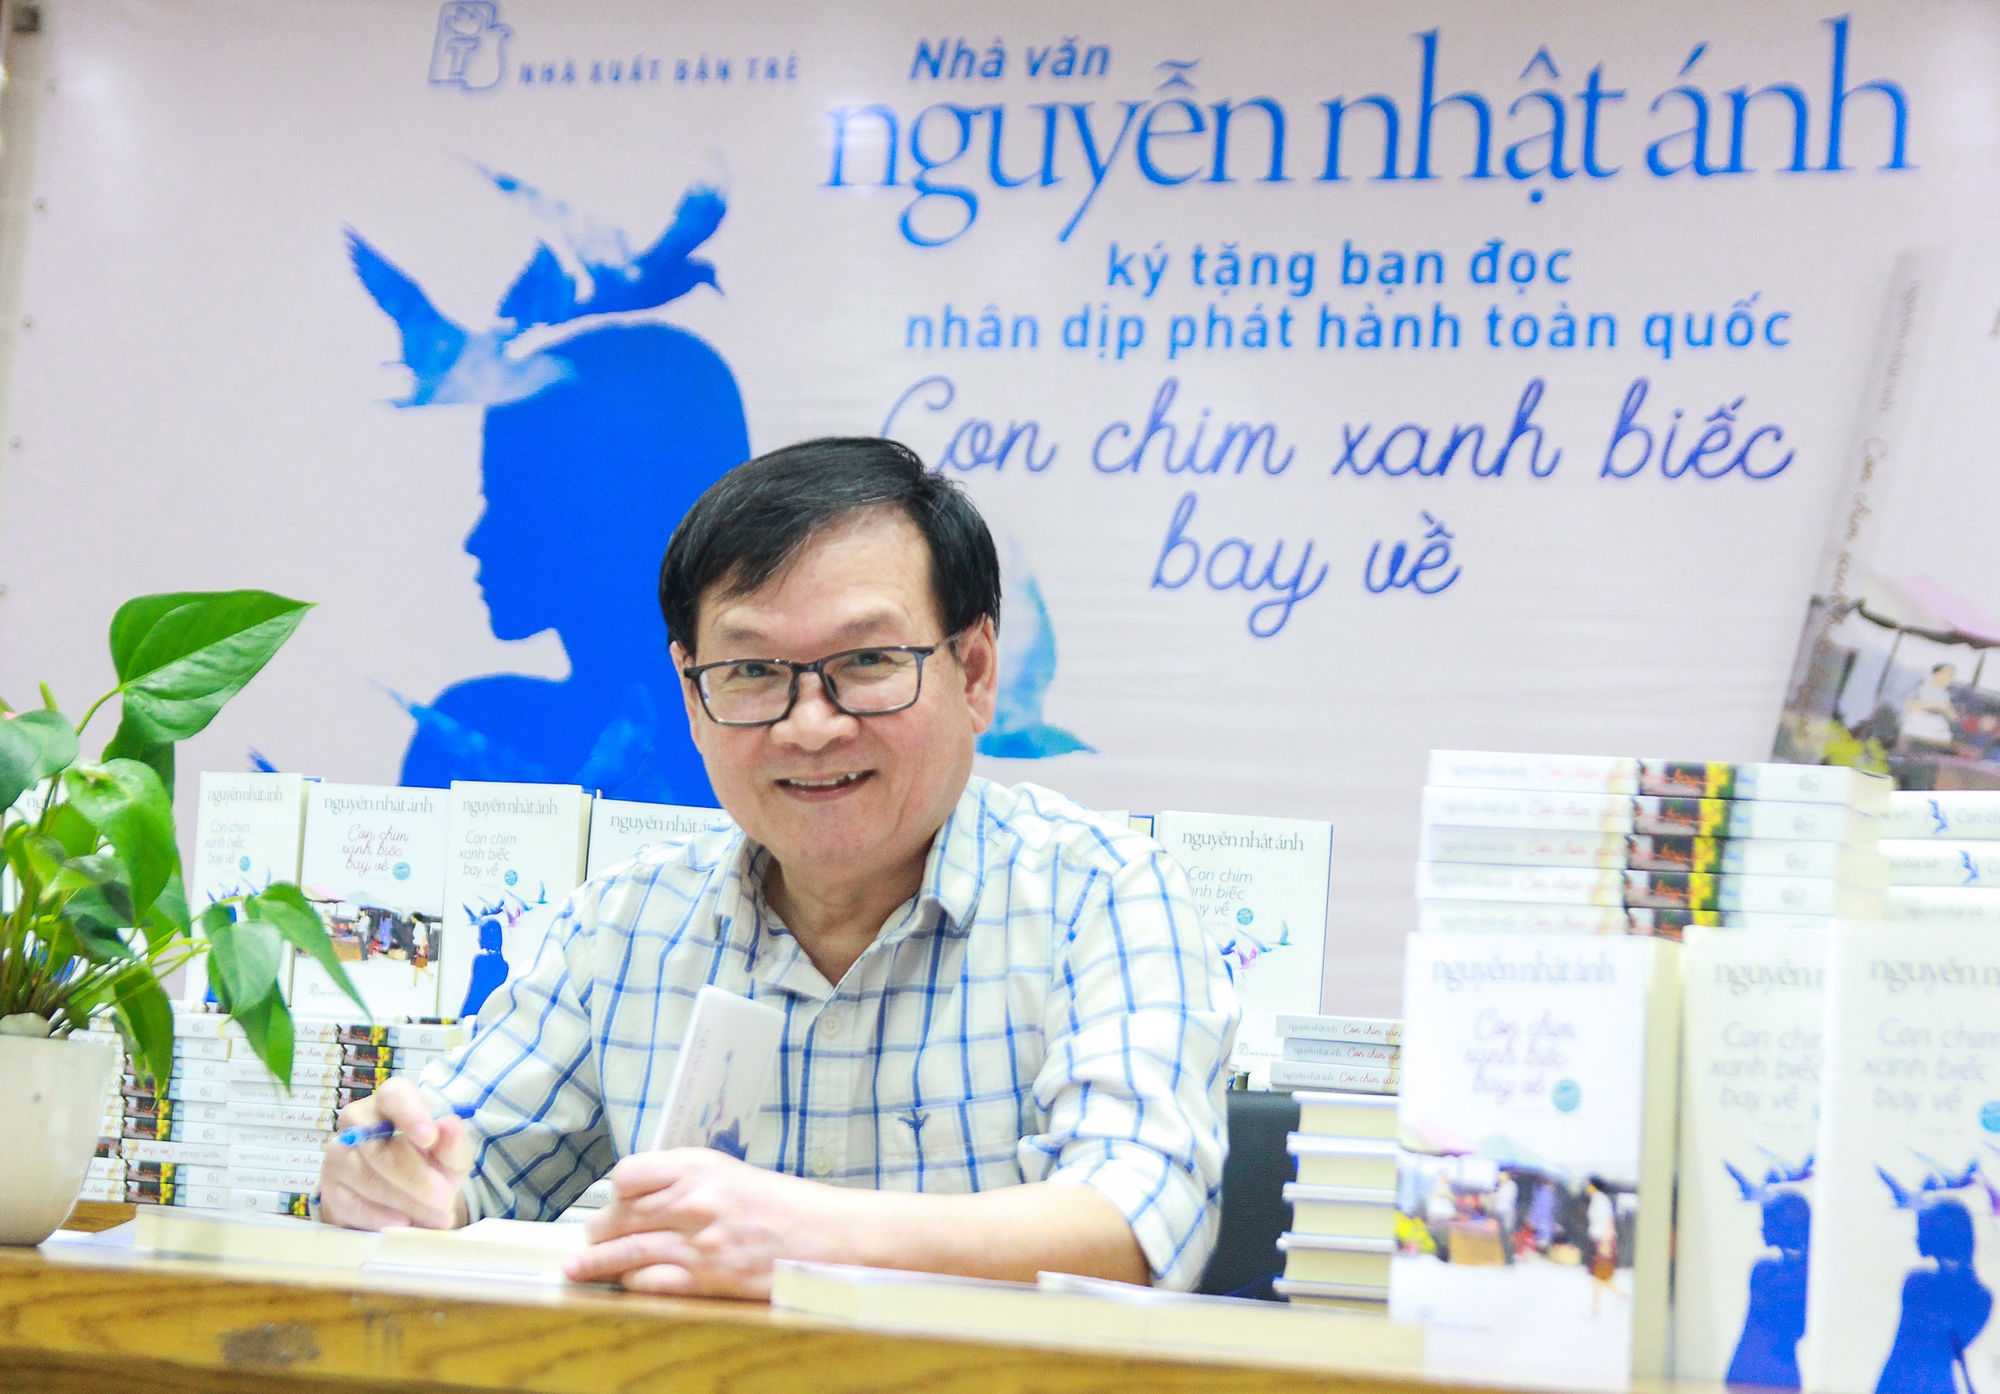 Thêm 2 tác phẩm của Nguyễn Nhật Ánh được xuất bản bằng tiếng Anh - Ảnh 2.